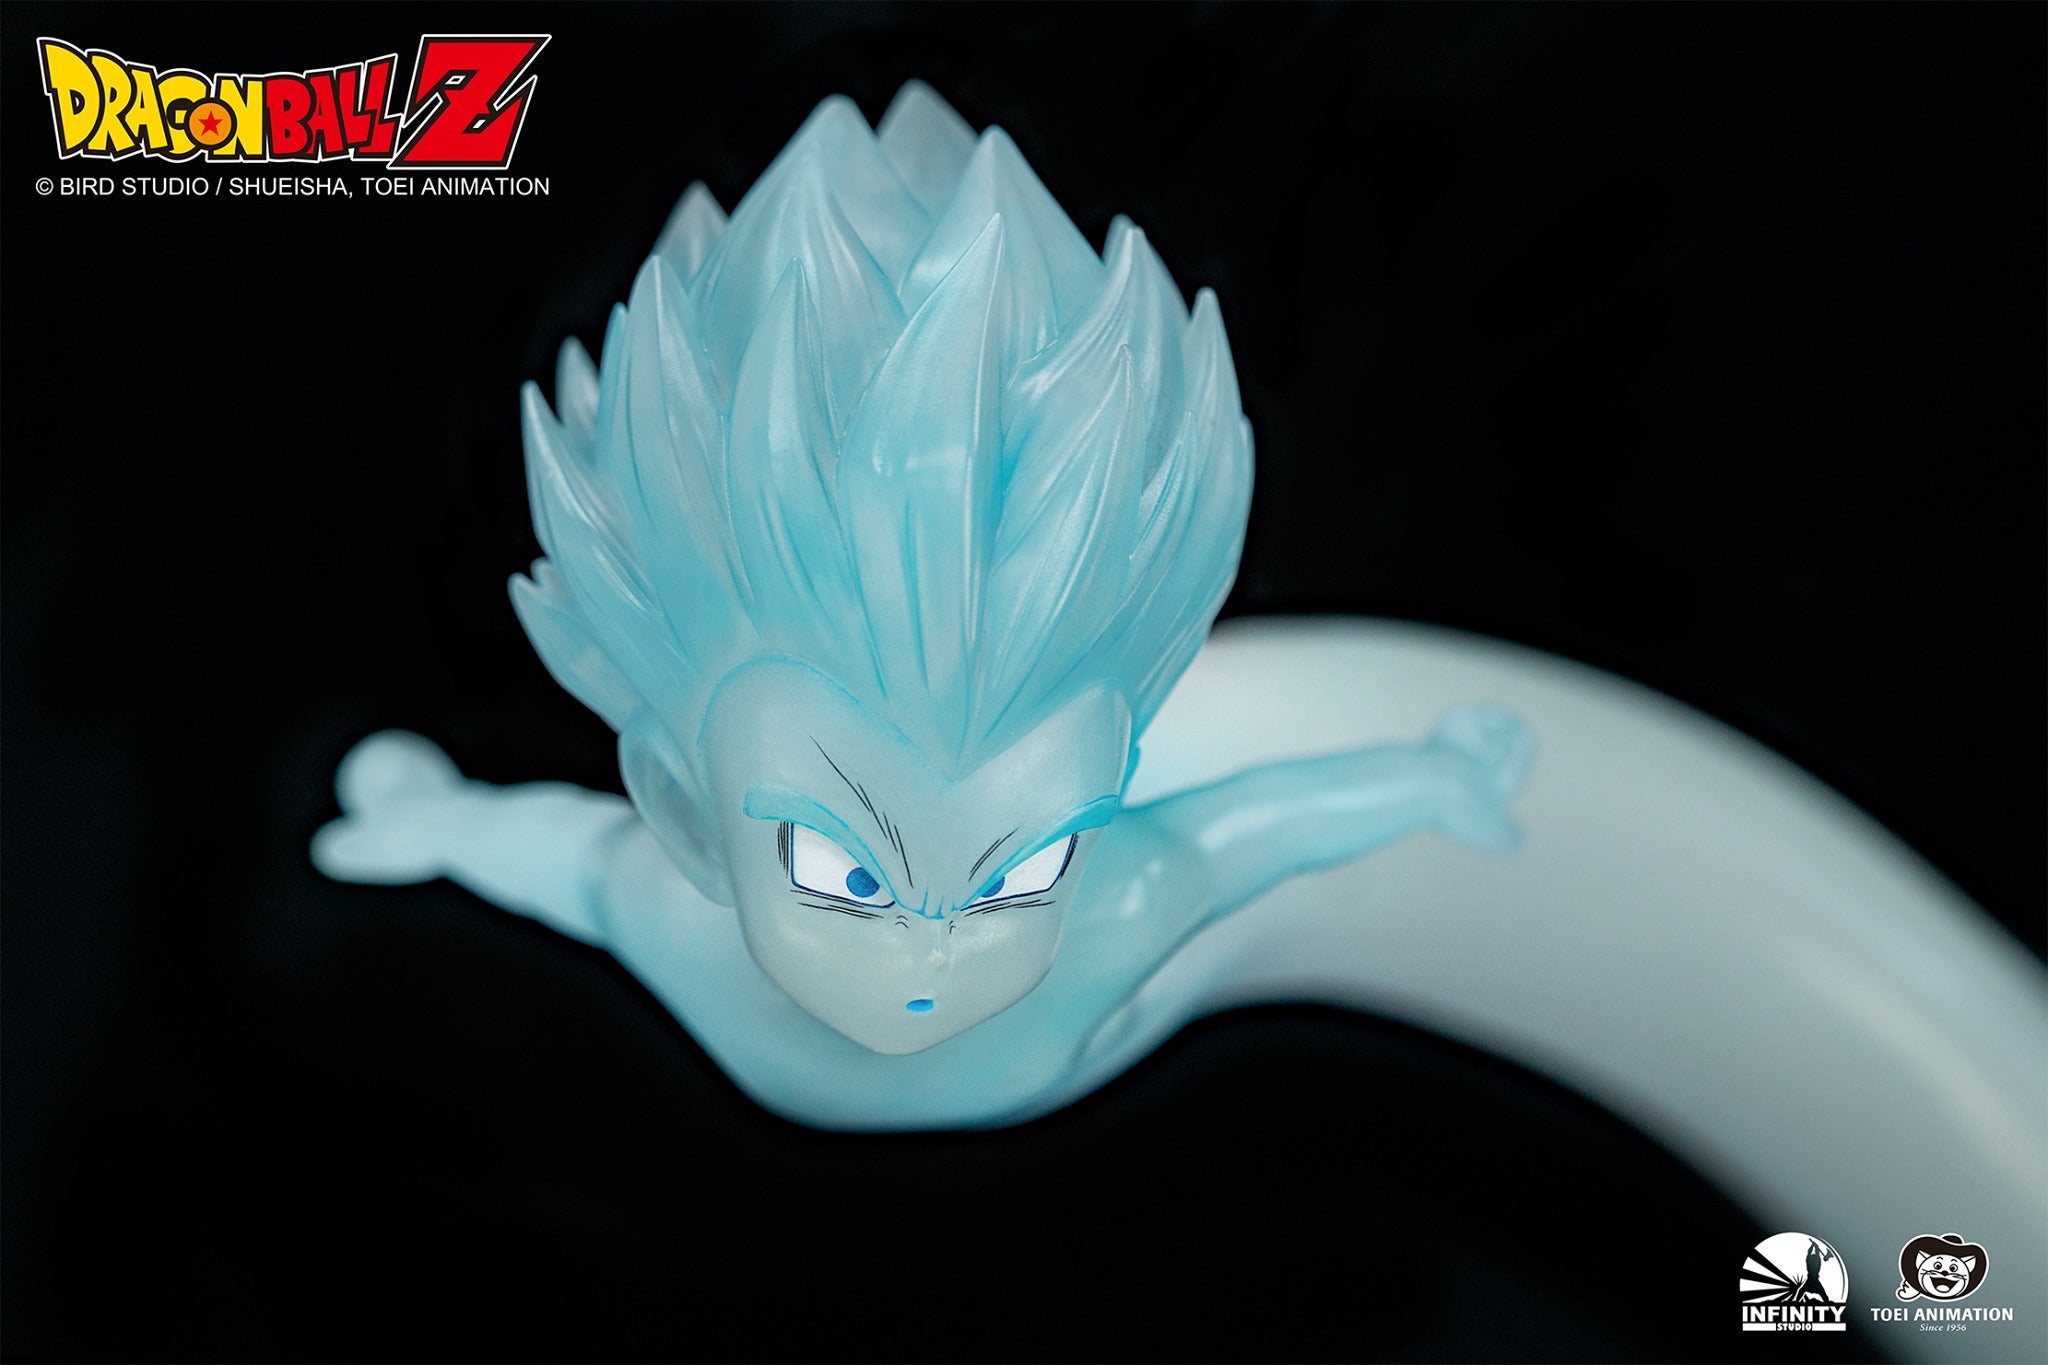 Dragon Ball Z Gotenks vs. Majin Buu 1/6 Scale Limited Edition Statue